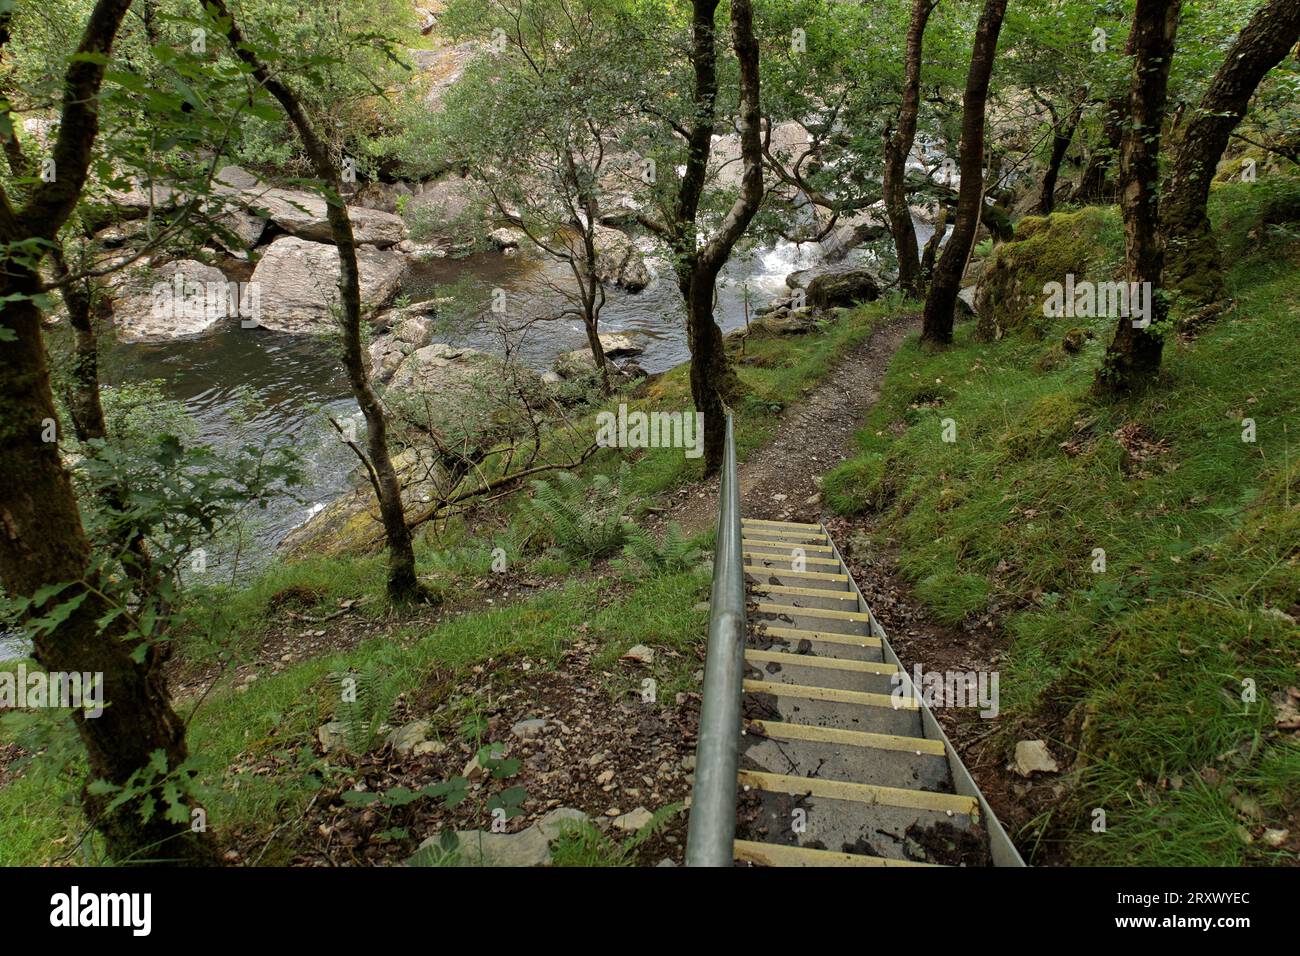 RSPB Reserve Gwenffrwd-dinas, Ystradffin, Llandovery, Carmarthenshire, pays de Galles, Royaume-Uni - étapes sur le sentier de la nature menant sur le sentier pédestre de la rivière Towy Banque D'Images